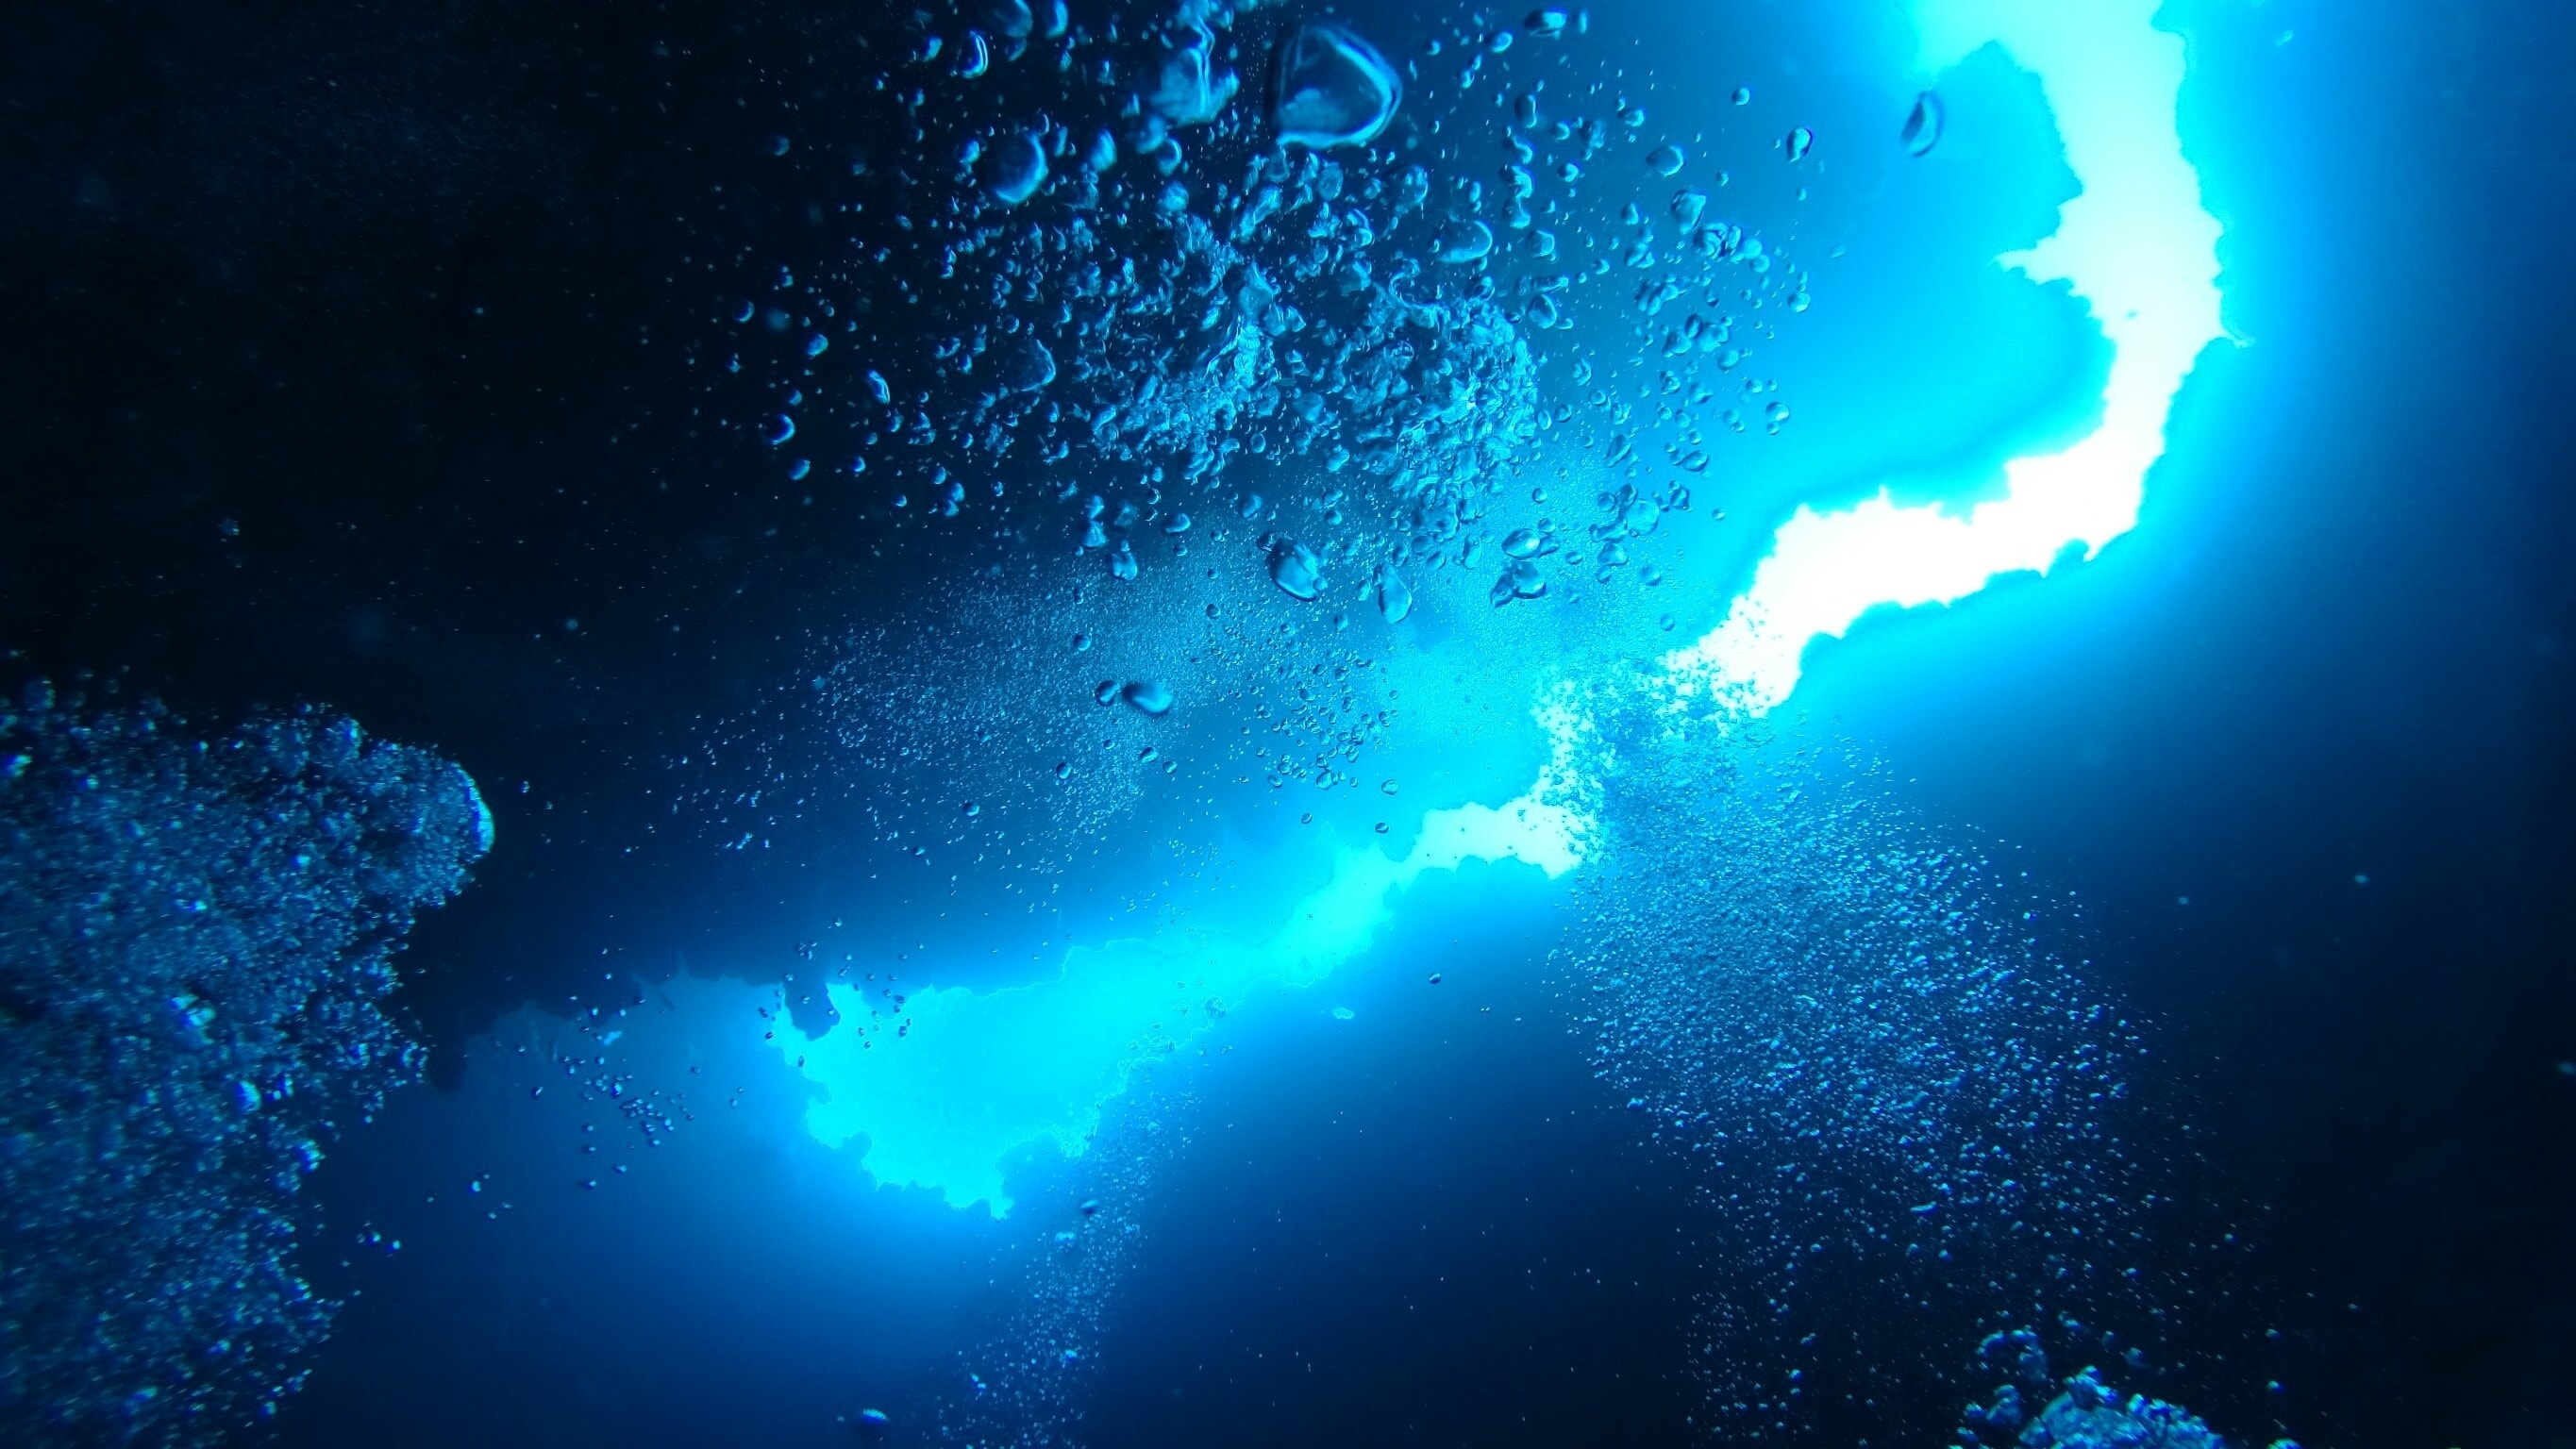 Red Sea Diving 4k Wallpaper UHD Image